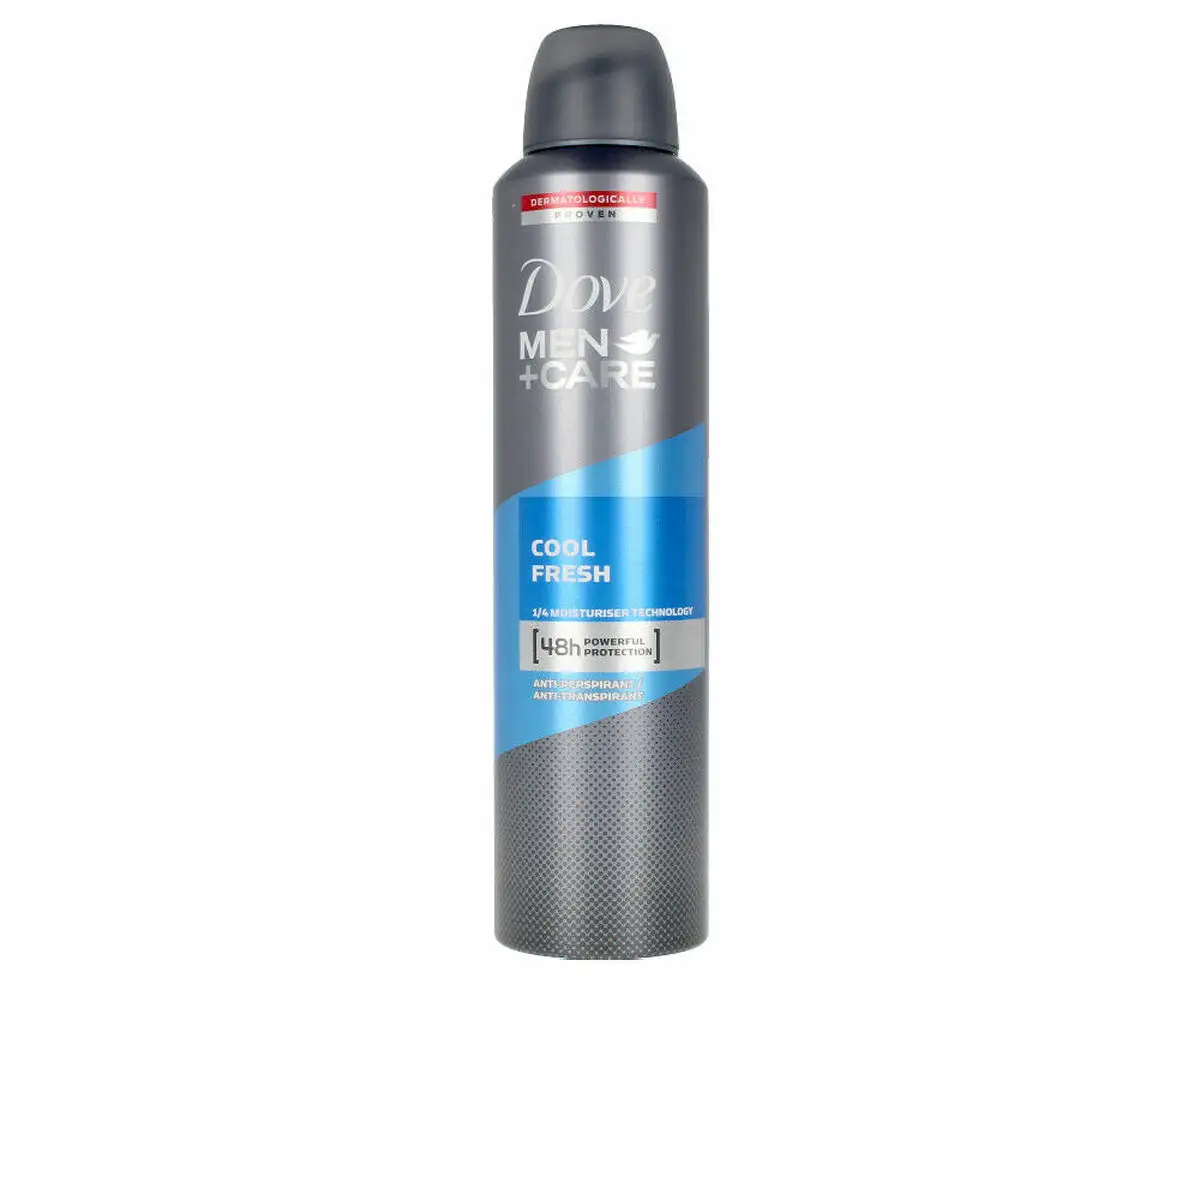 Spray deodorant dove men cool fresh 250 ml _2799. DIAYTAR SENEGAL - L'Art de Choisir, l'Art de Vivre. Parcourez notre boutique en ligne et choisissez parmi des produits de qualité qui ajoutent de l'élégance à votre quotidien.